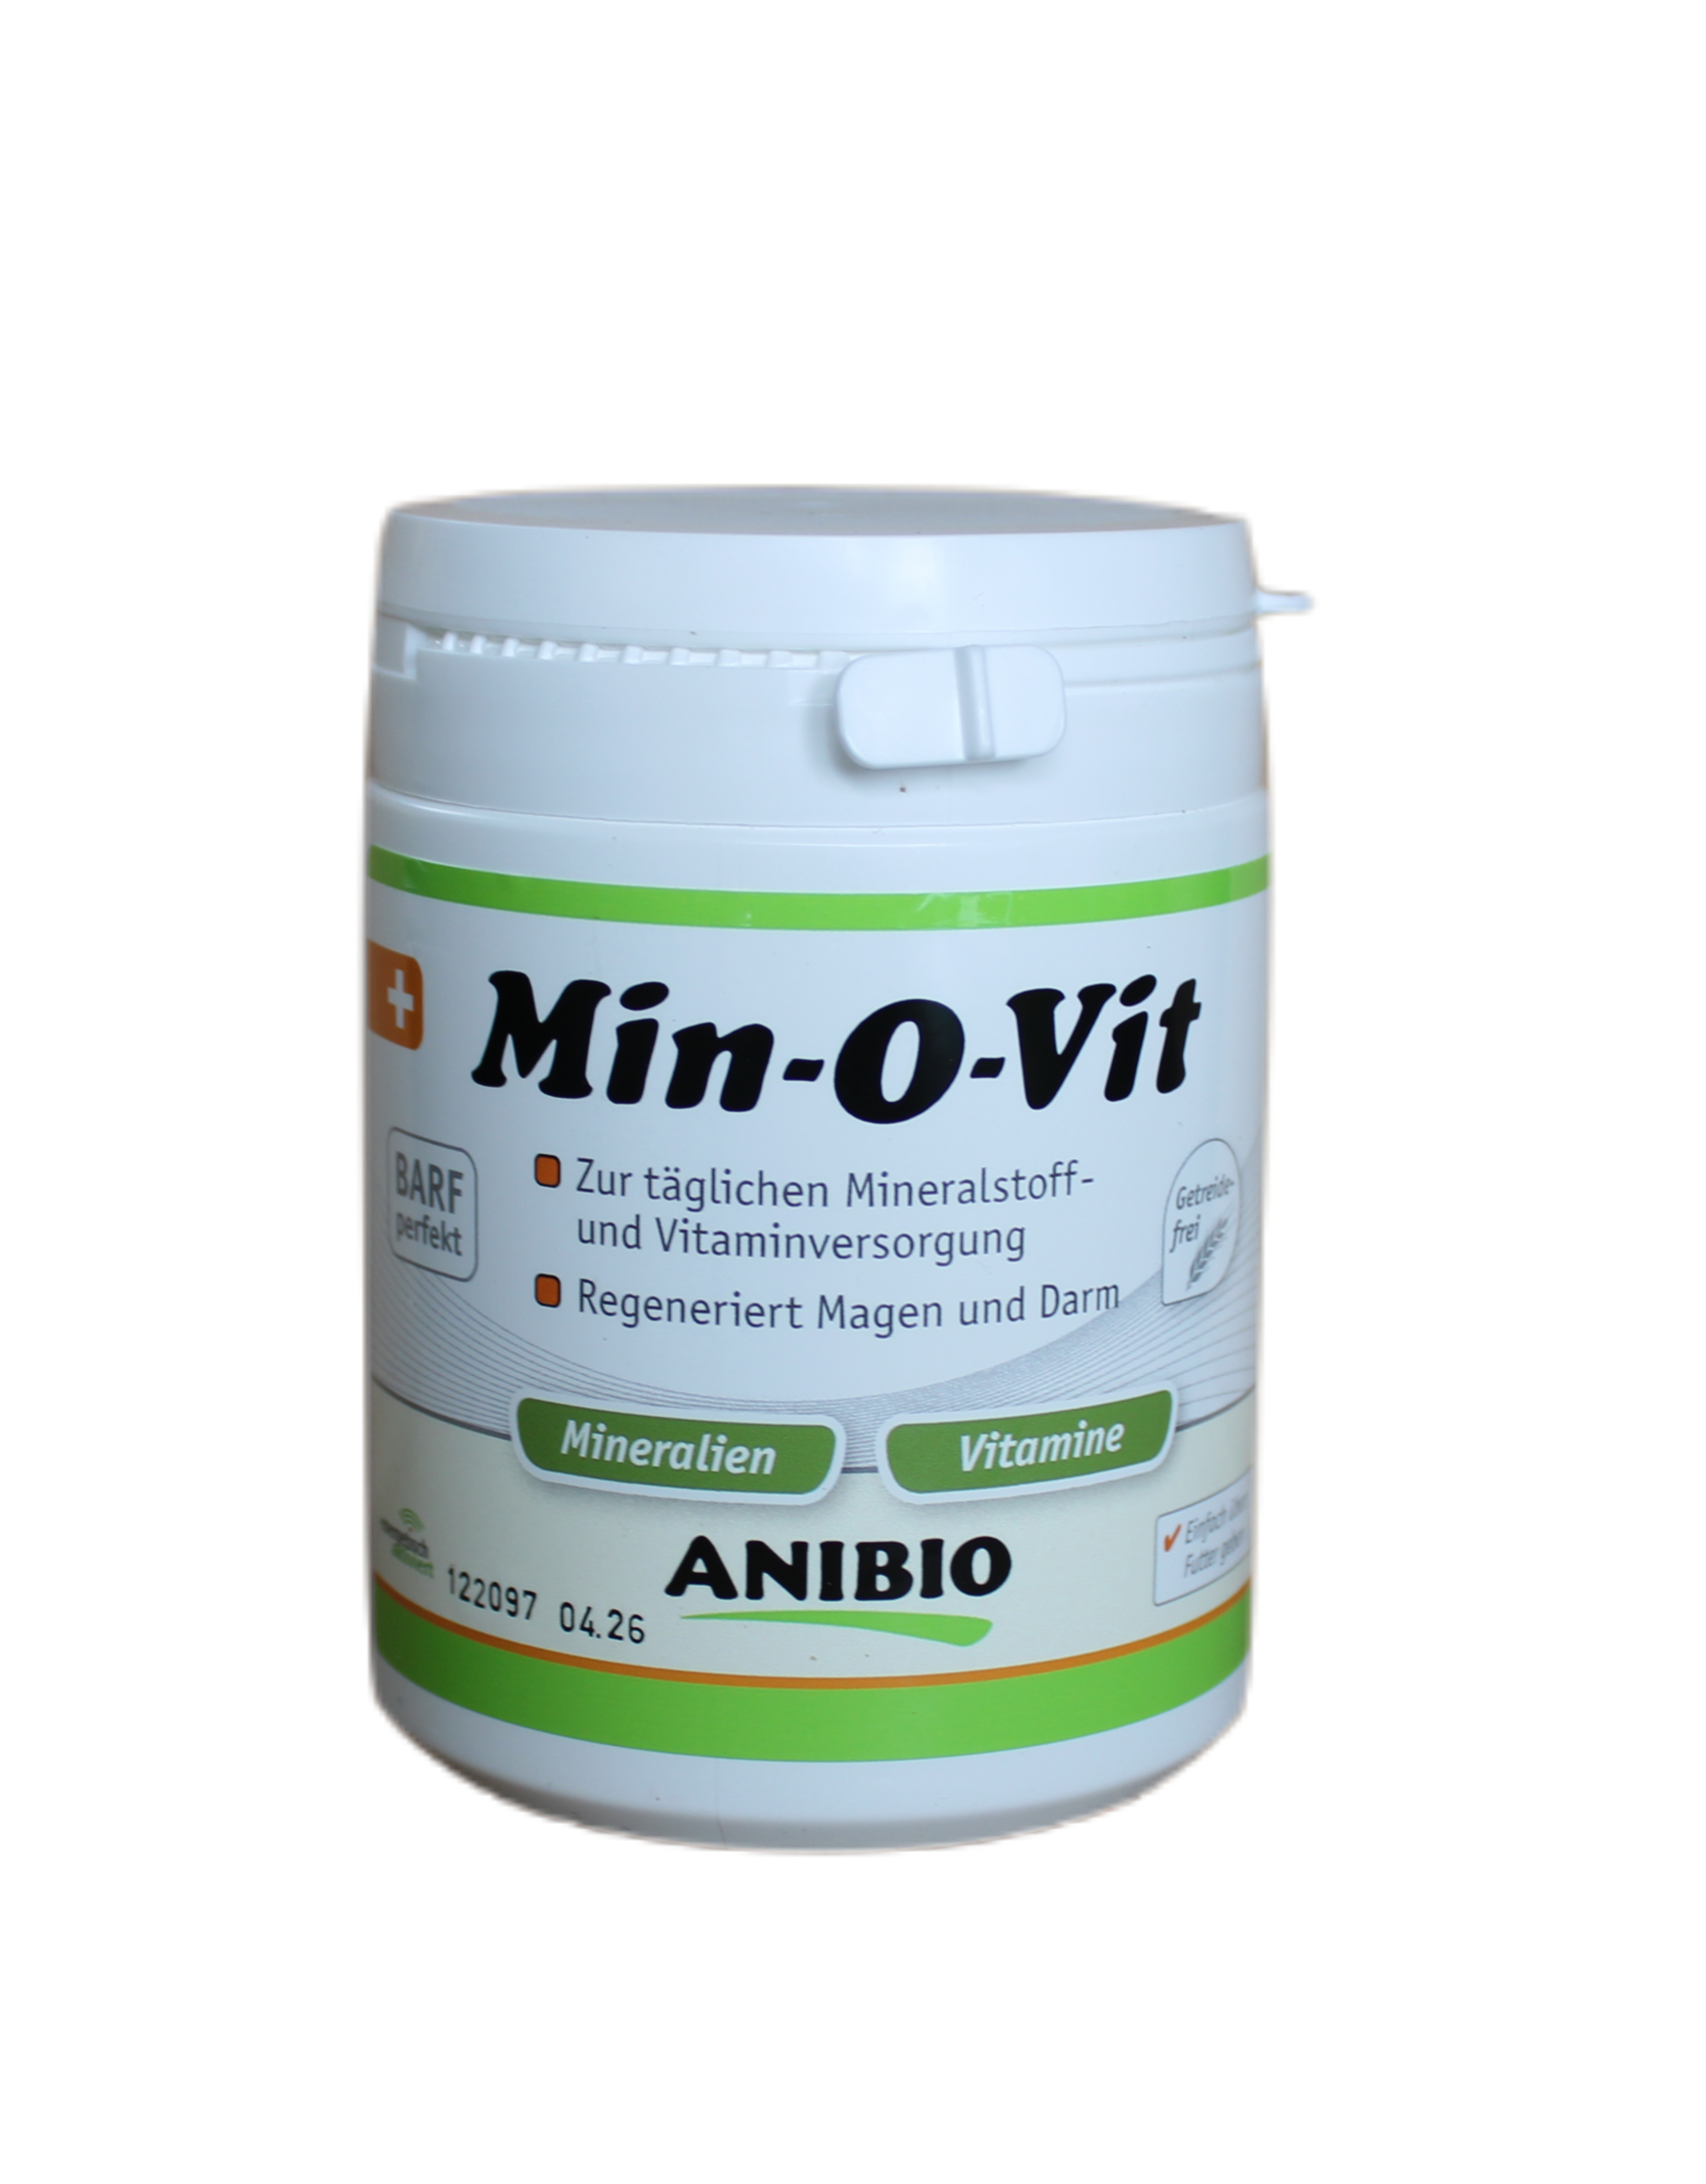 Anibio Min-O-Vit 130g - Mineralstoff und Vitaminversorgung